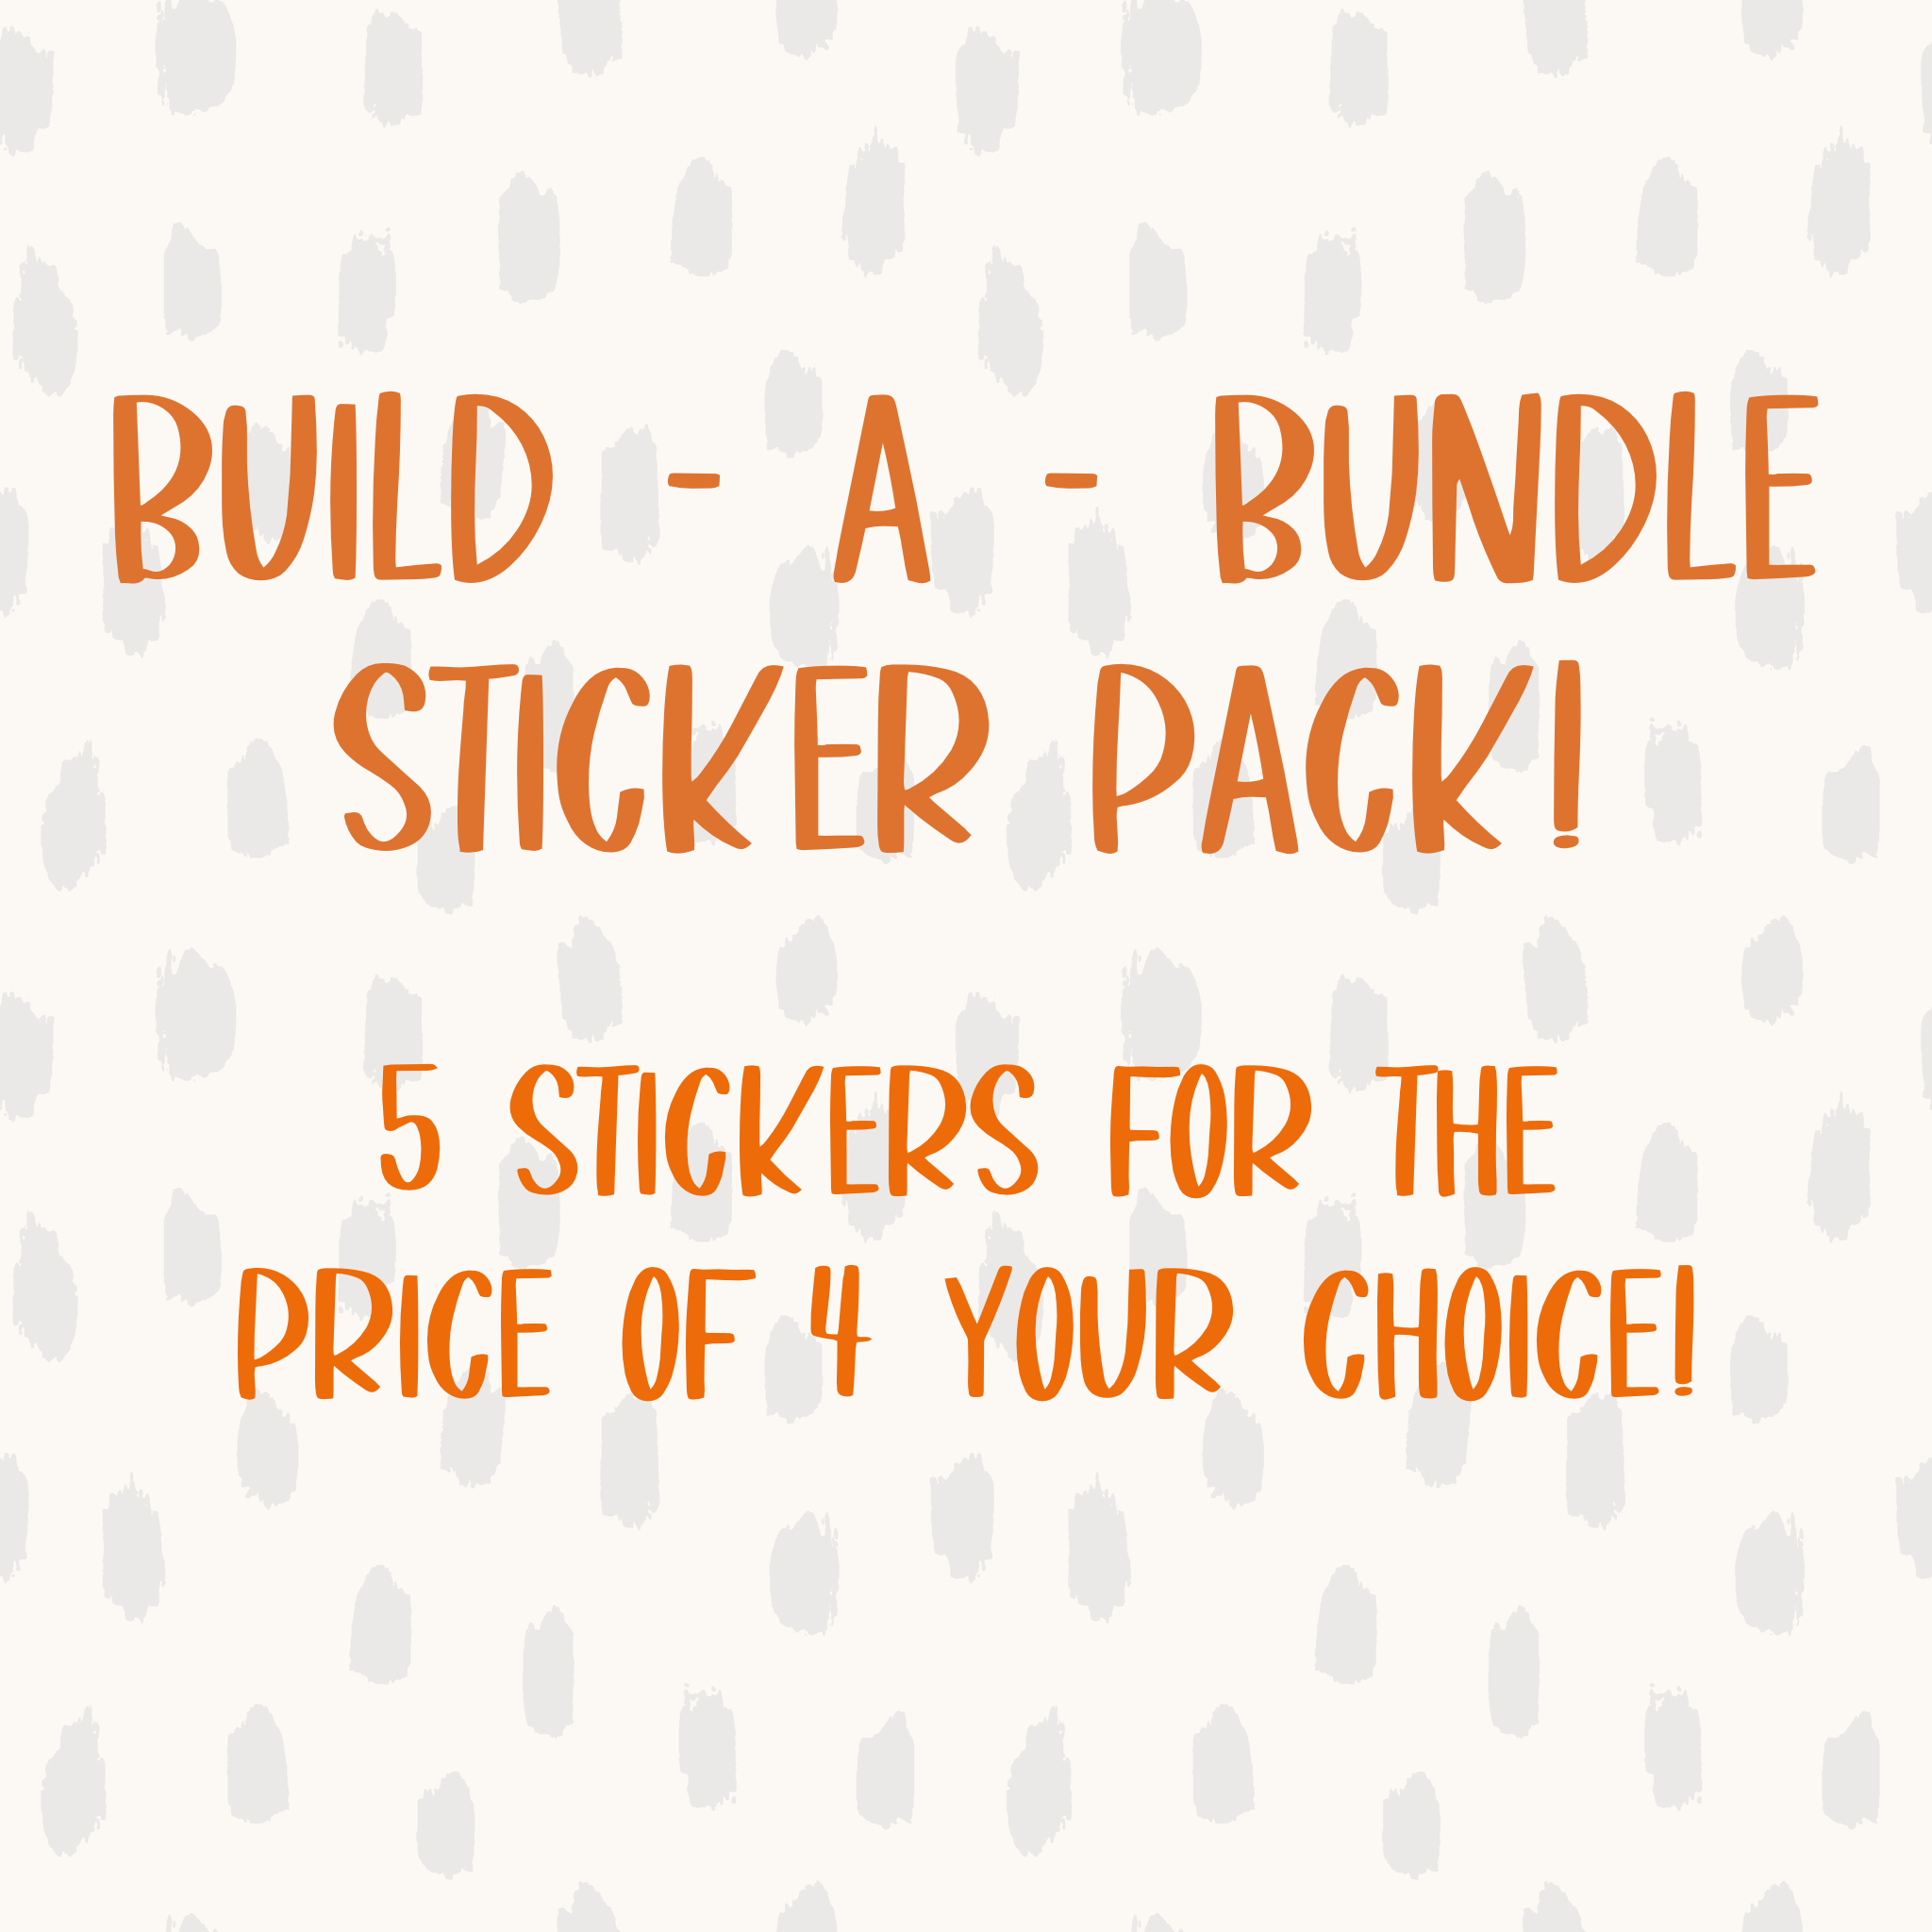 Build - A - Bundle Sticker Pack